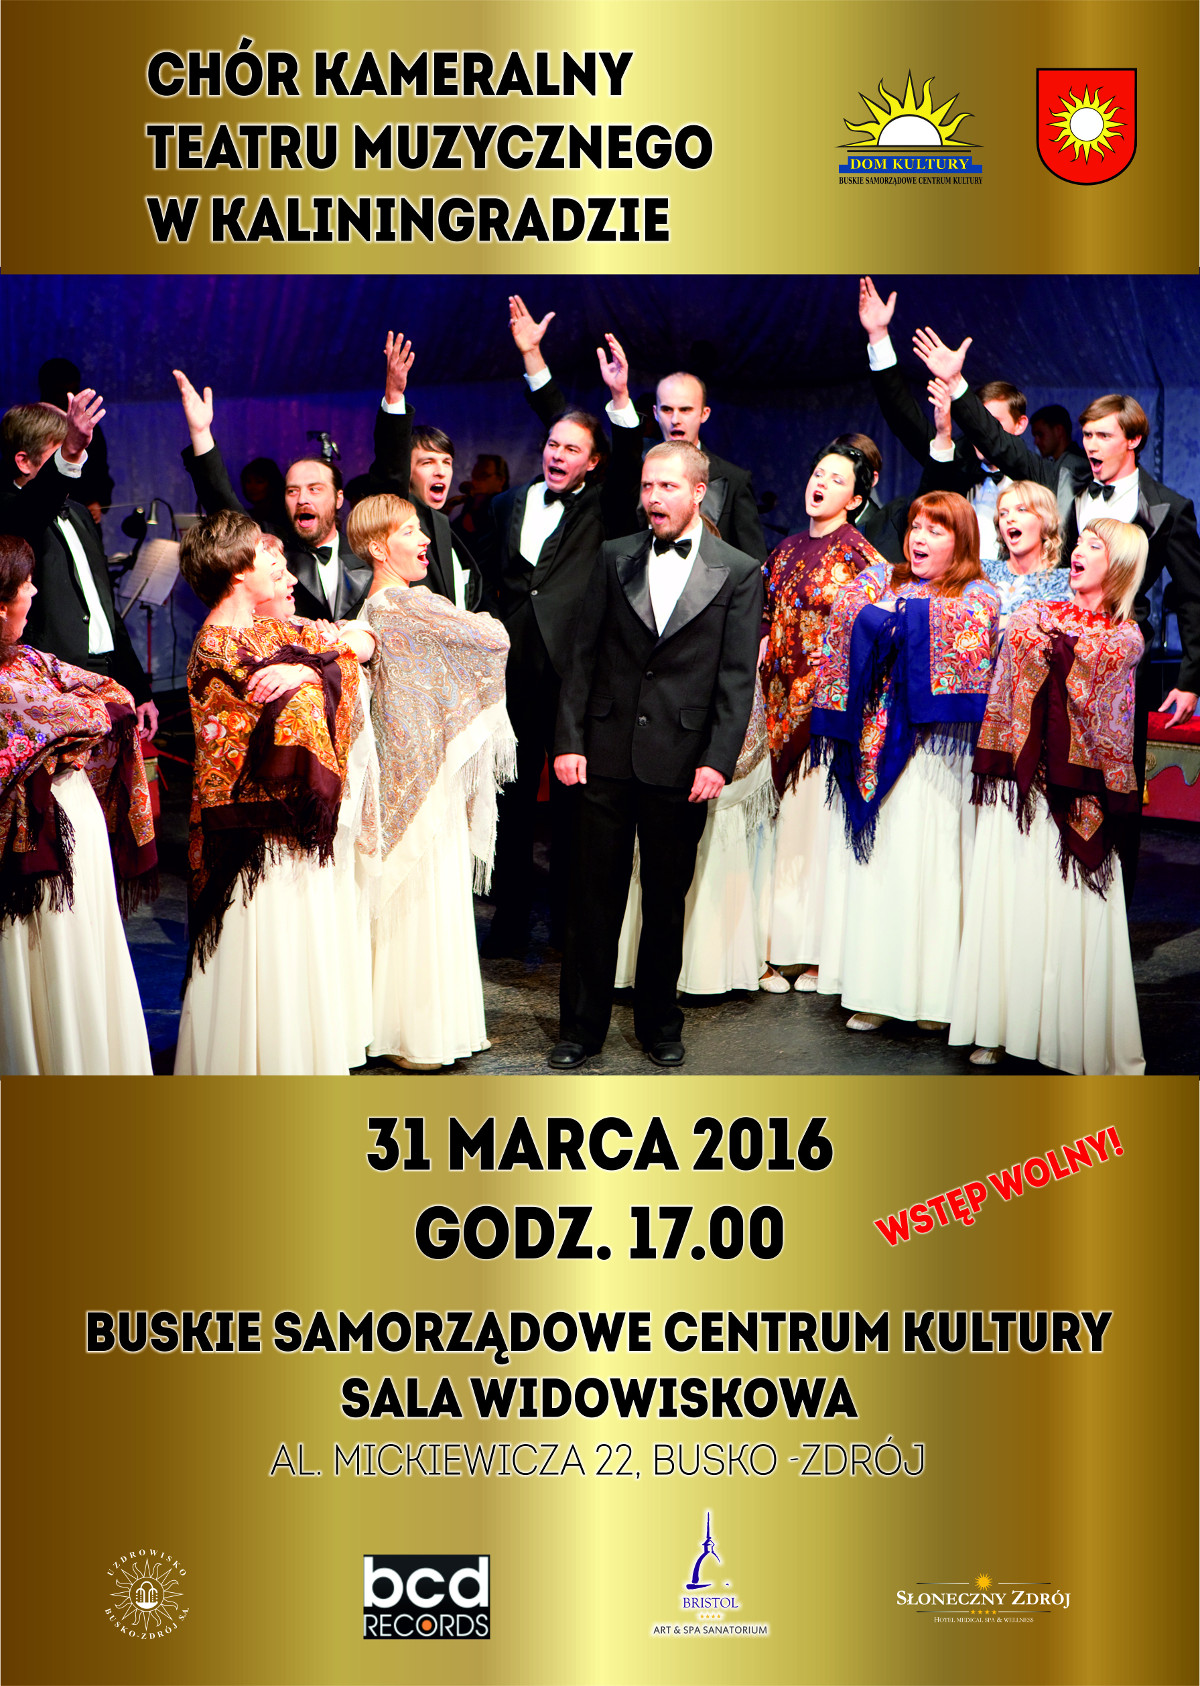 Zapraszamy na koncert Chóru Kameralnego Teatru Muzycznego w Kaliningradzie, który odbędzie się w czwartek, 31 marca 2016 o godzinie 17:00 w sali widowiskowej Buskiego Samorządowego Centrum Kultury.